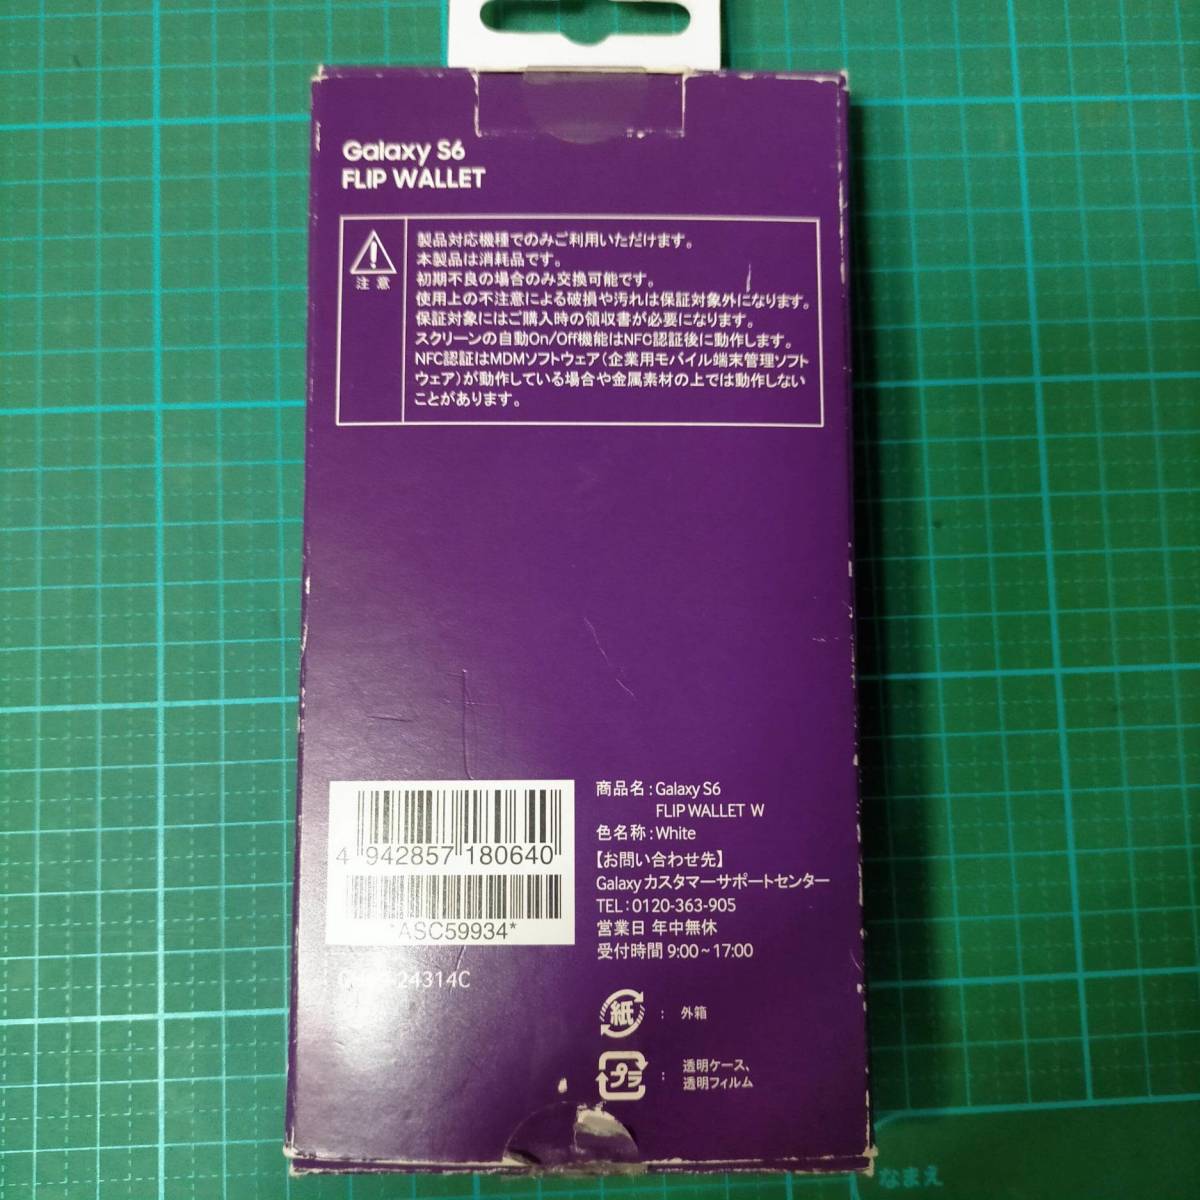 正規品 純正ドコモ セレクト Galaxy S6 スマホ ケース カバー 手帳型 未使用 ギャラクシー docomo select FLIP WALLET W phone cover case